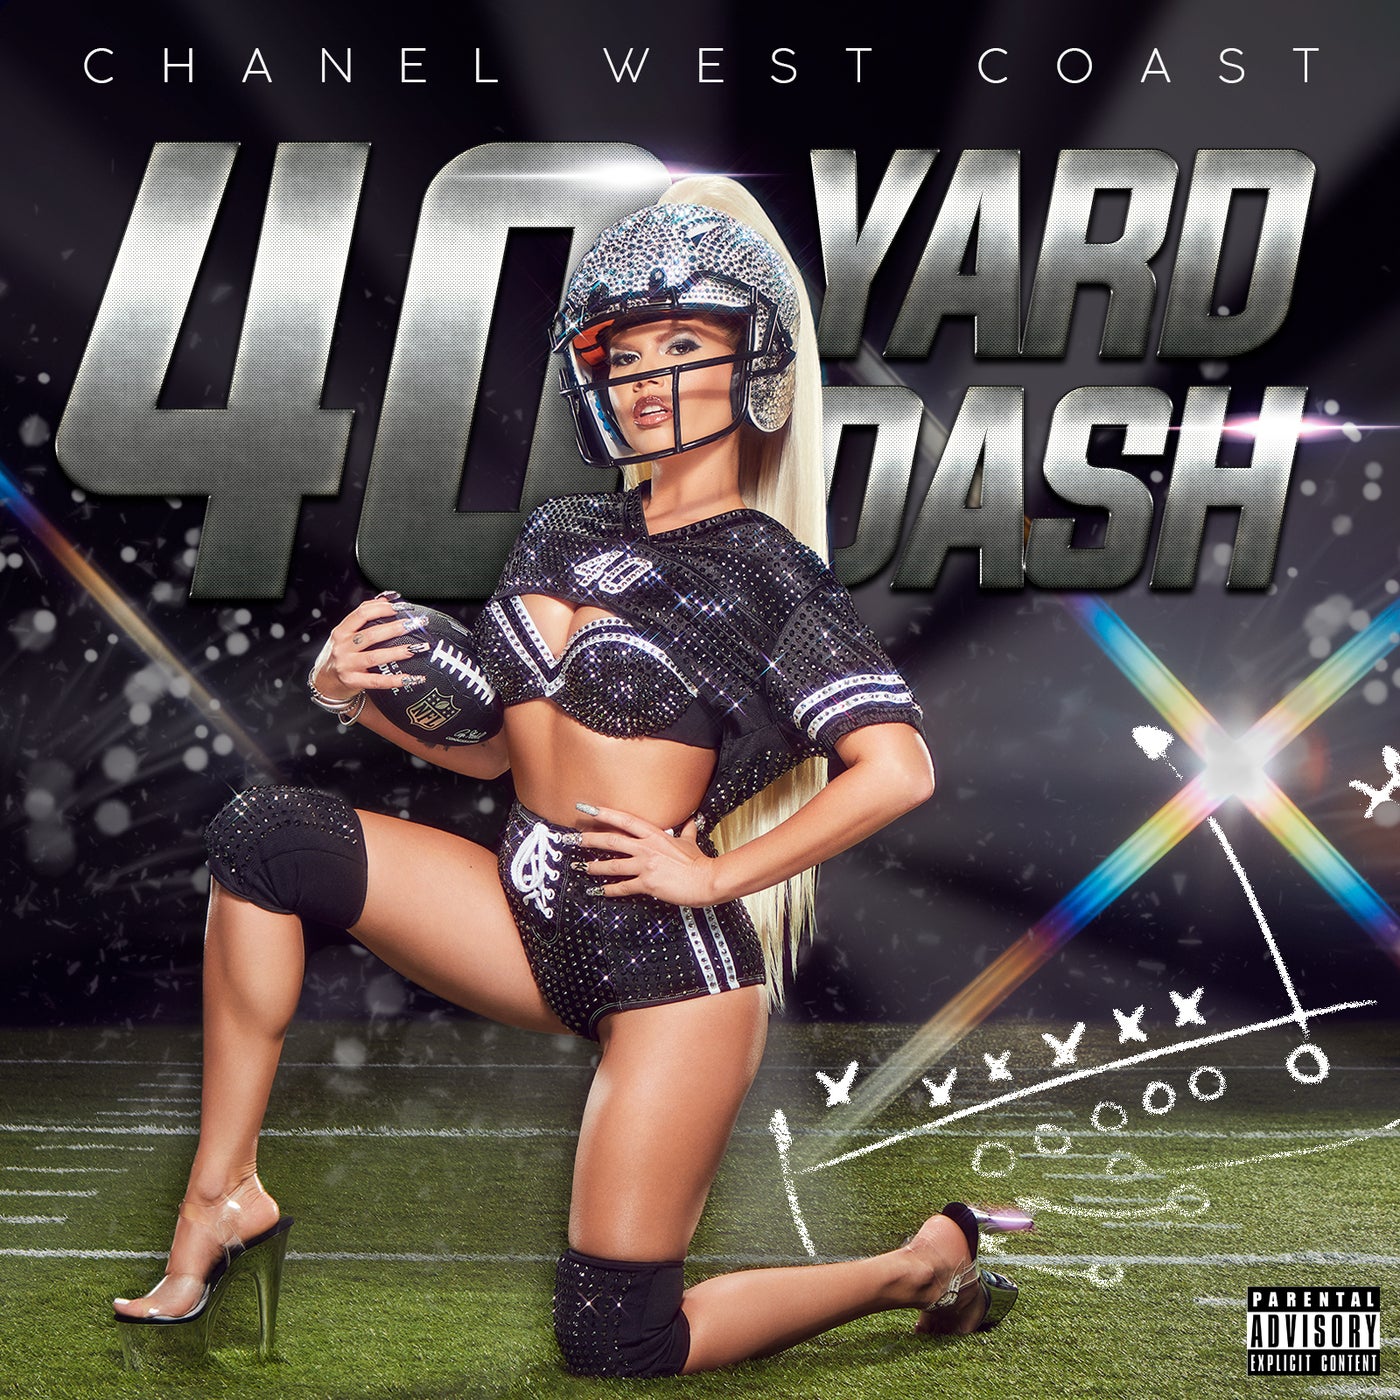 40 Yard Dash - song and lyrics by Chanel West Coast